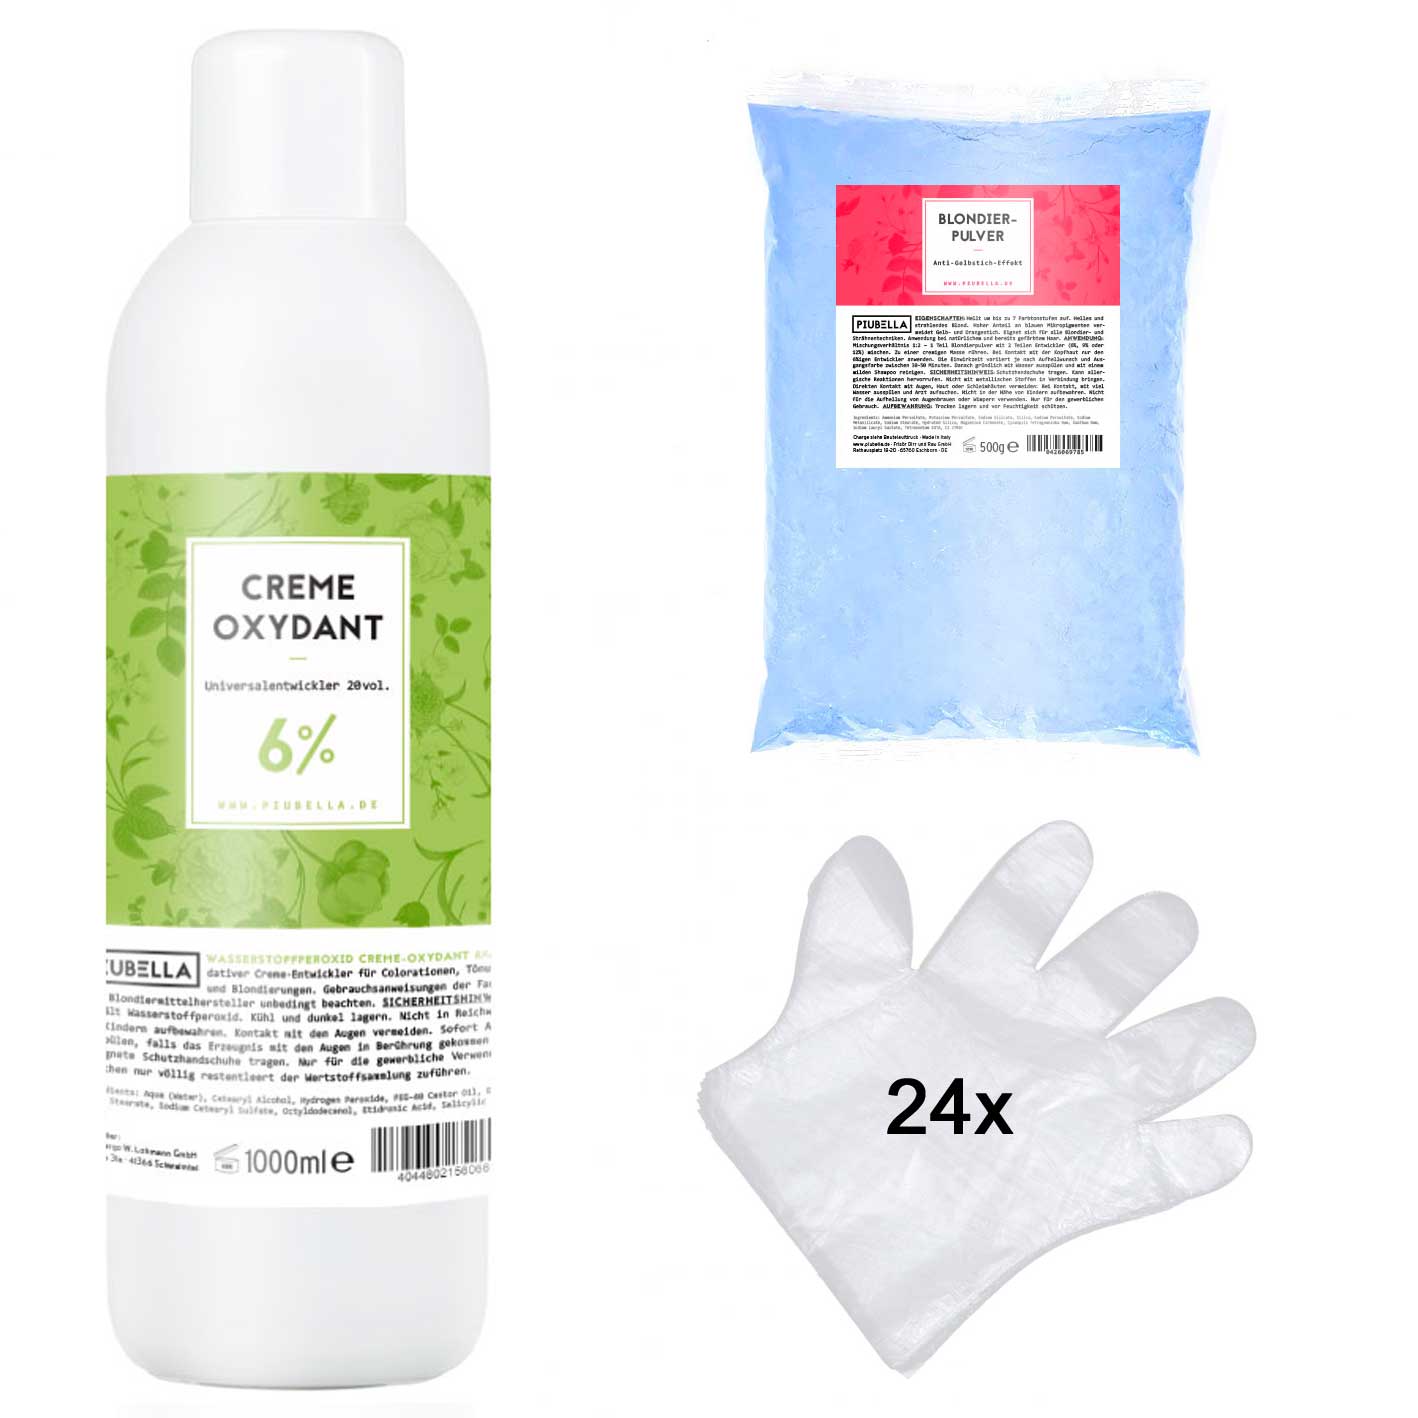 Piubella Creme Oxydant Universal Entwickler 6% 1000 ml + 500g Blondierpulver + 24 Einmal-Handschuhe